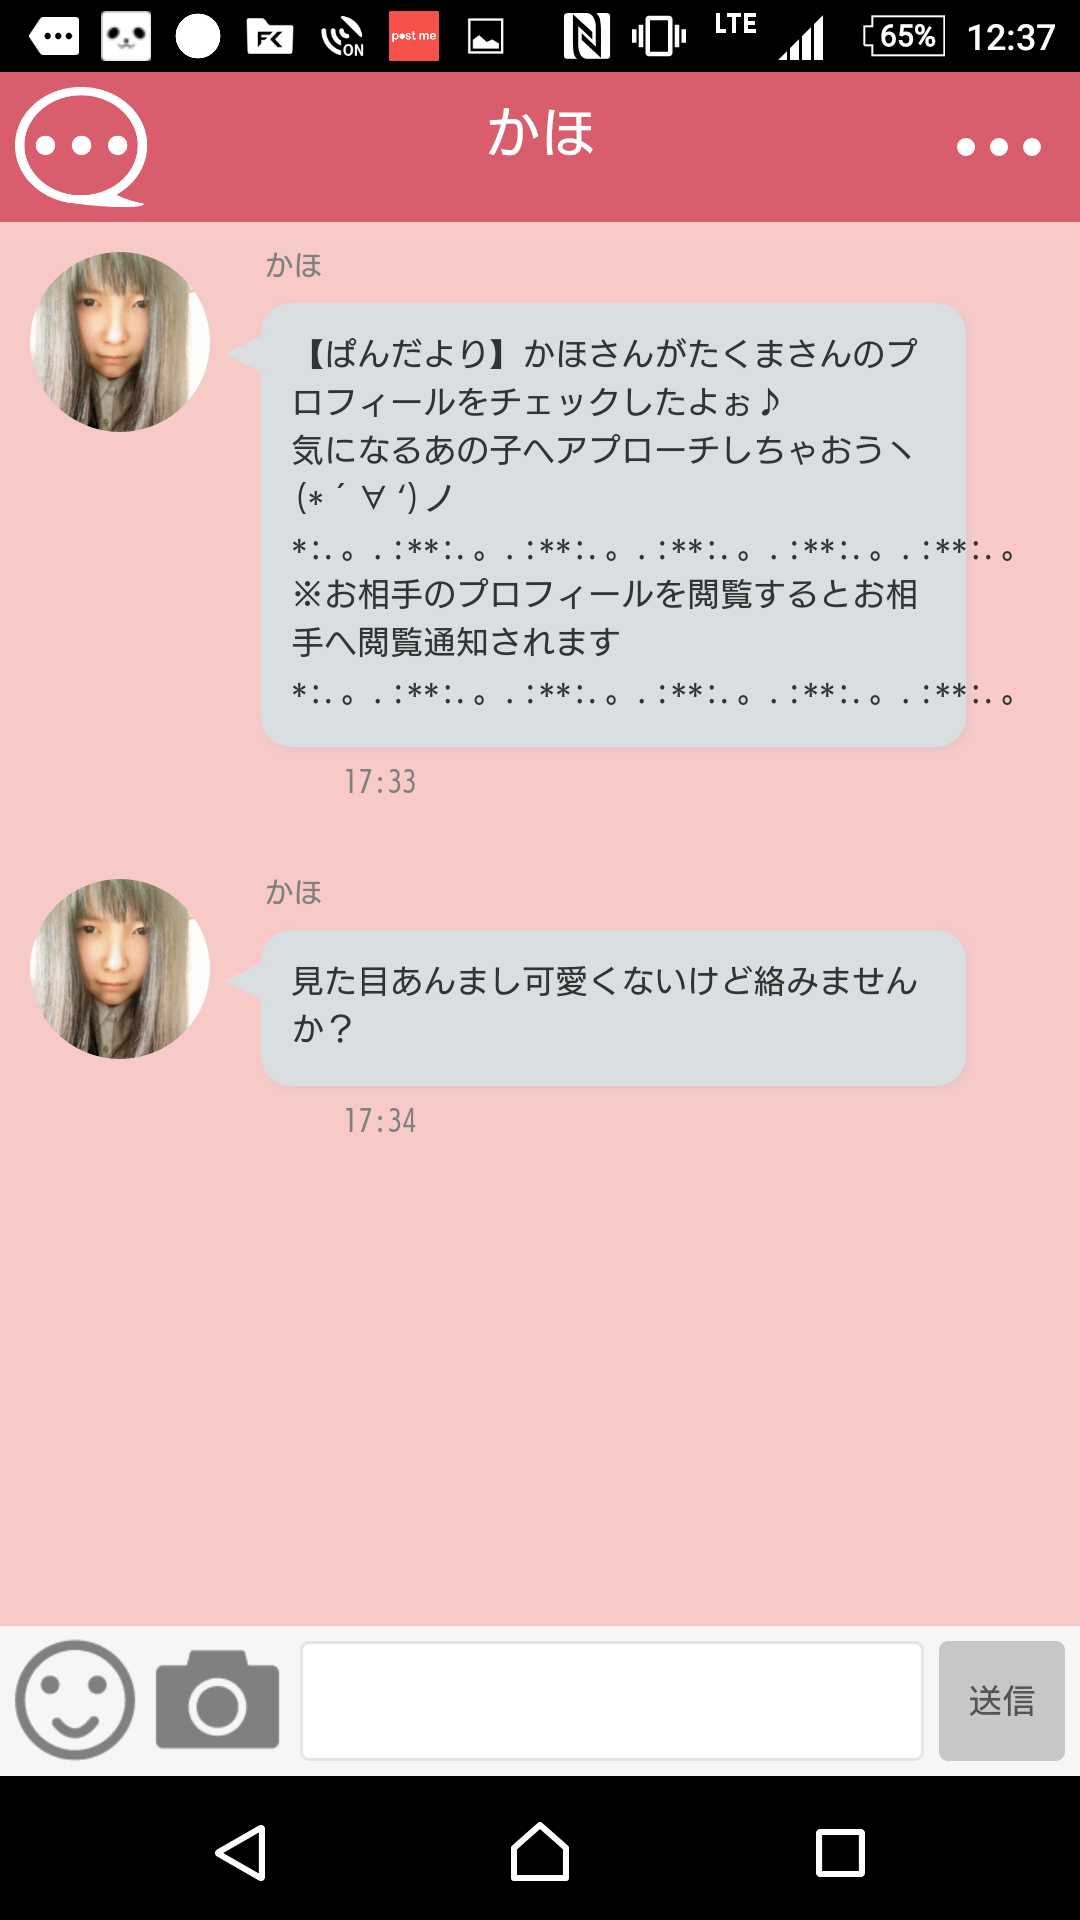 出会いチャット、会える無料恋活SNS-ぱんだトーク